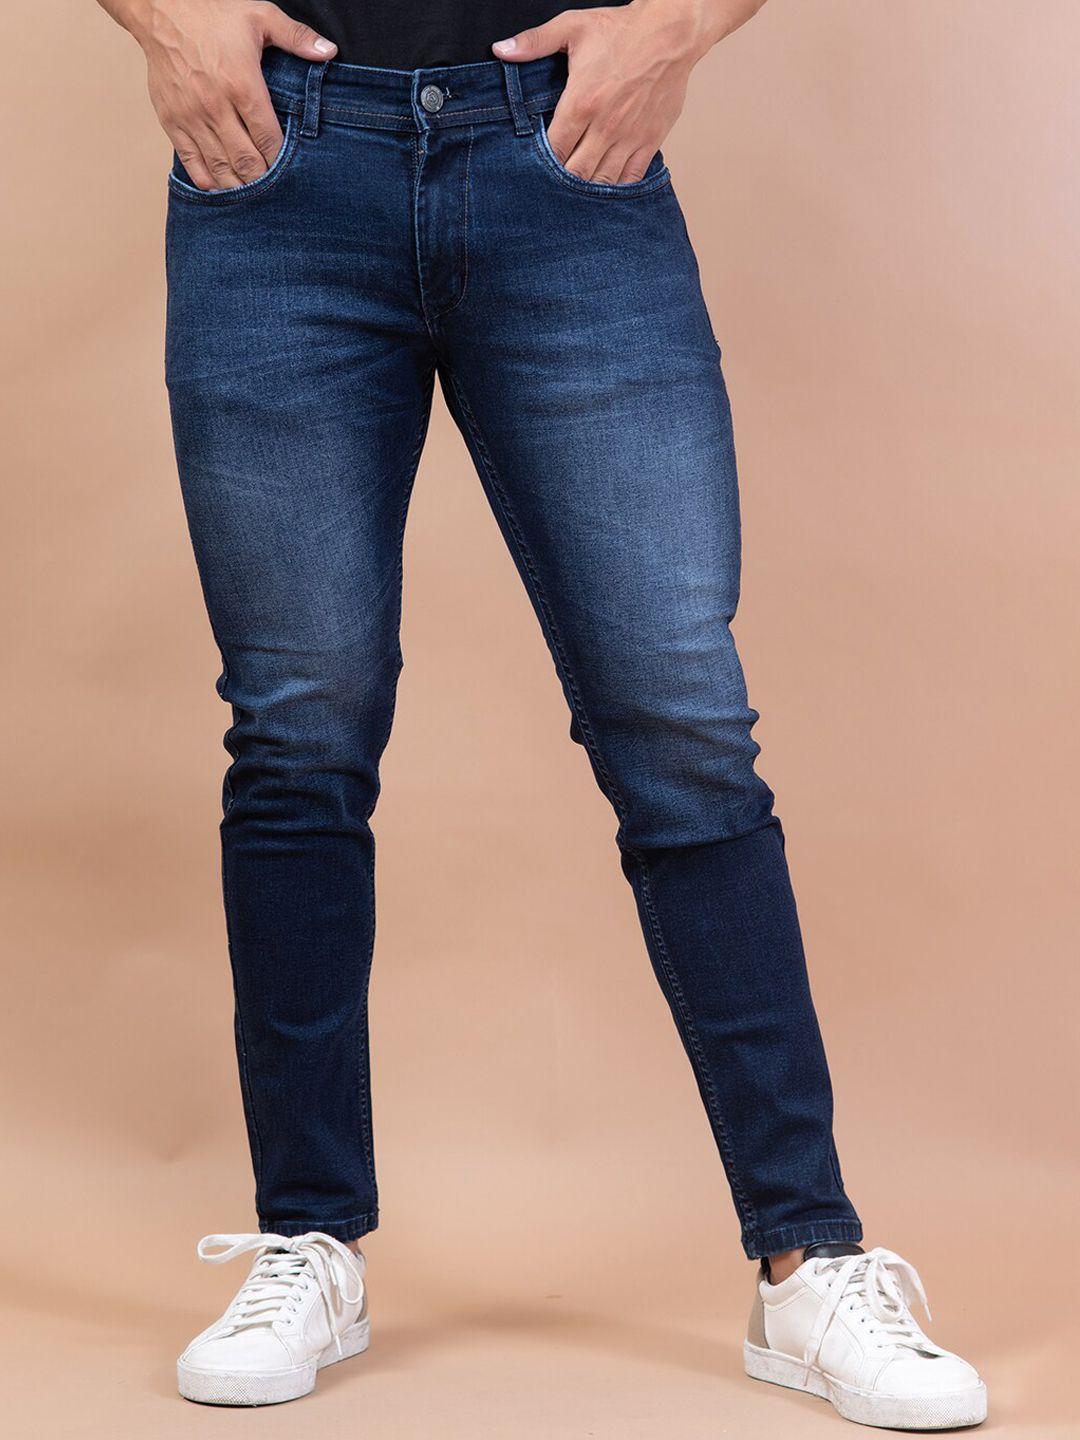 tistabene-men-blue-comfort-slim-fit-light-fade-denim-stretchable-jeans